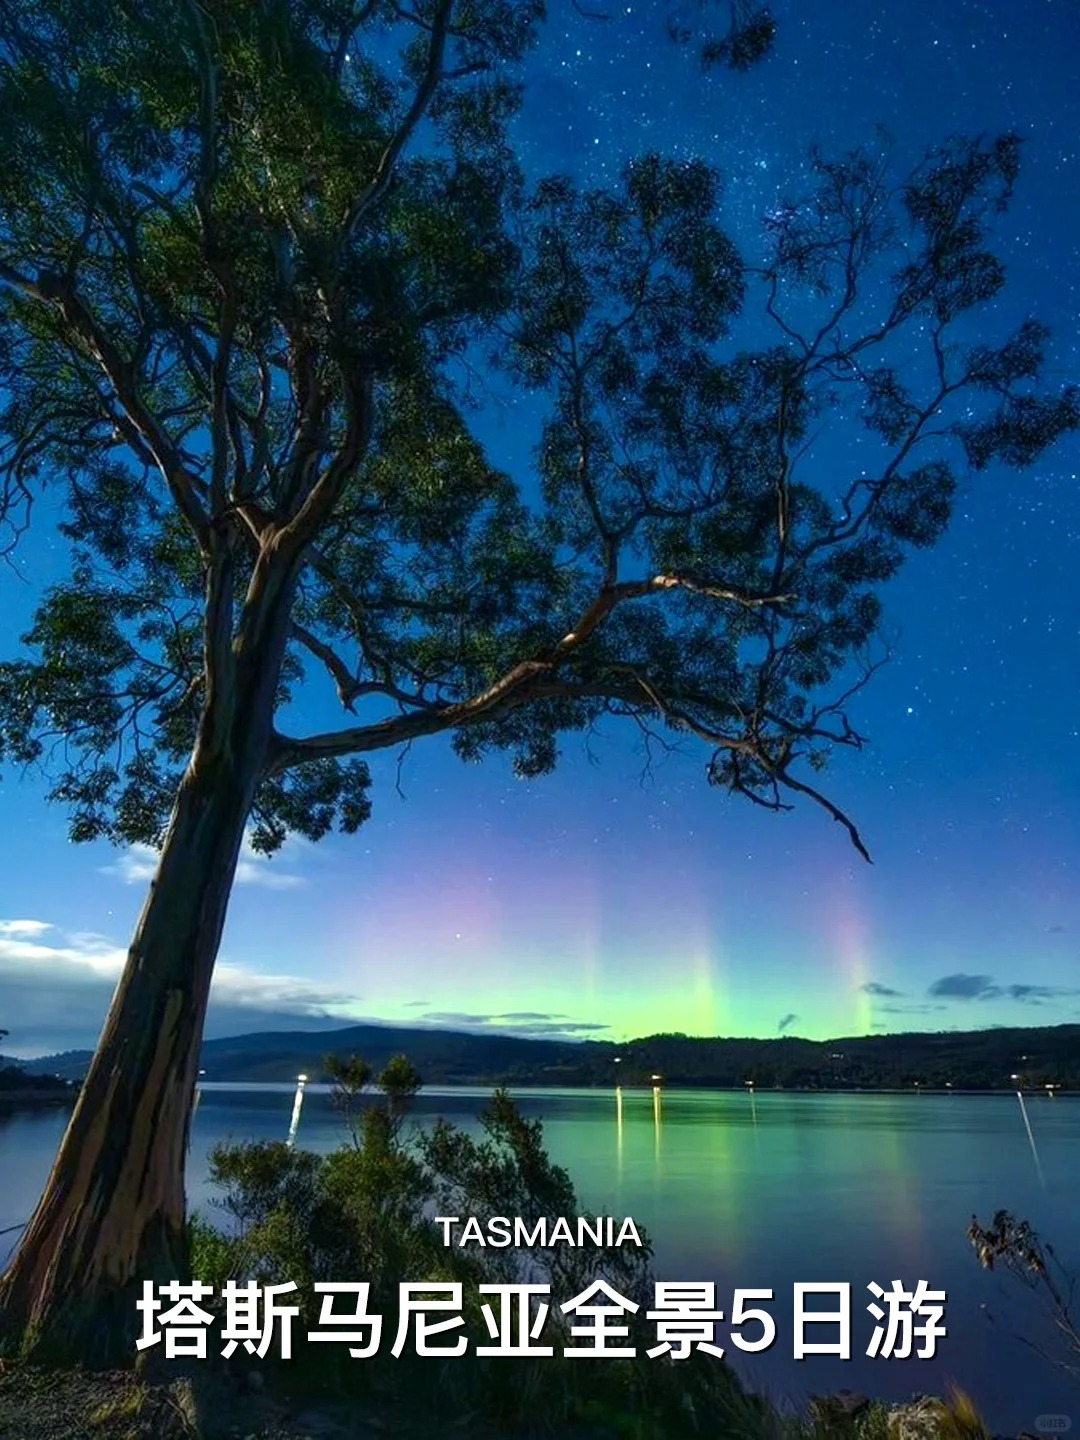 澳洲塔斯马尼亚极光季|5天4晚极光环岛游